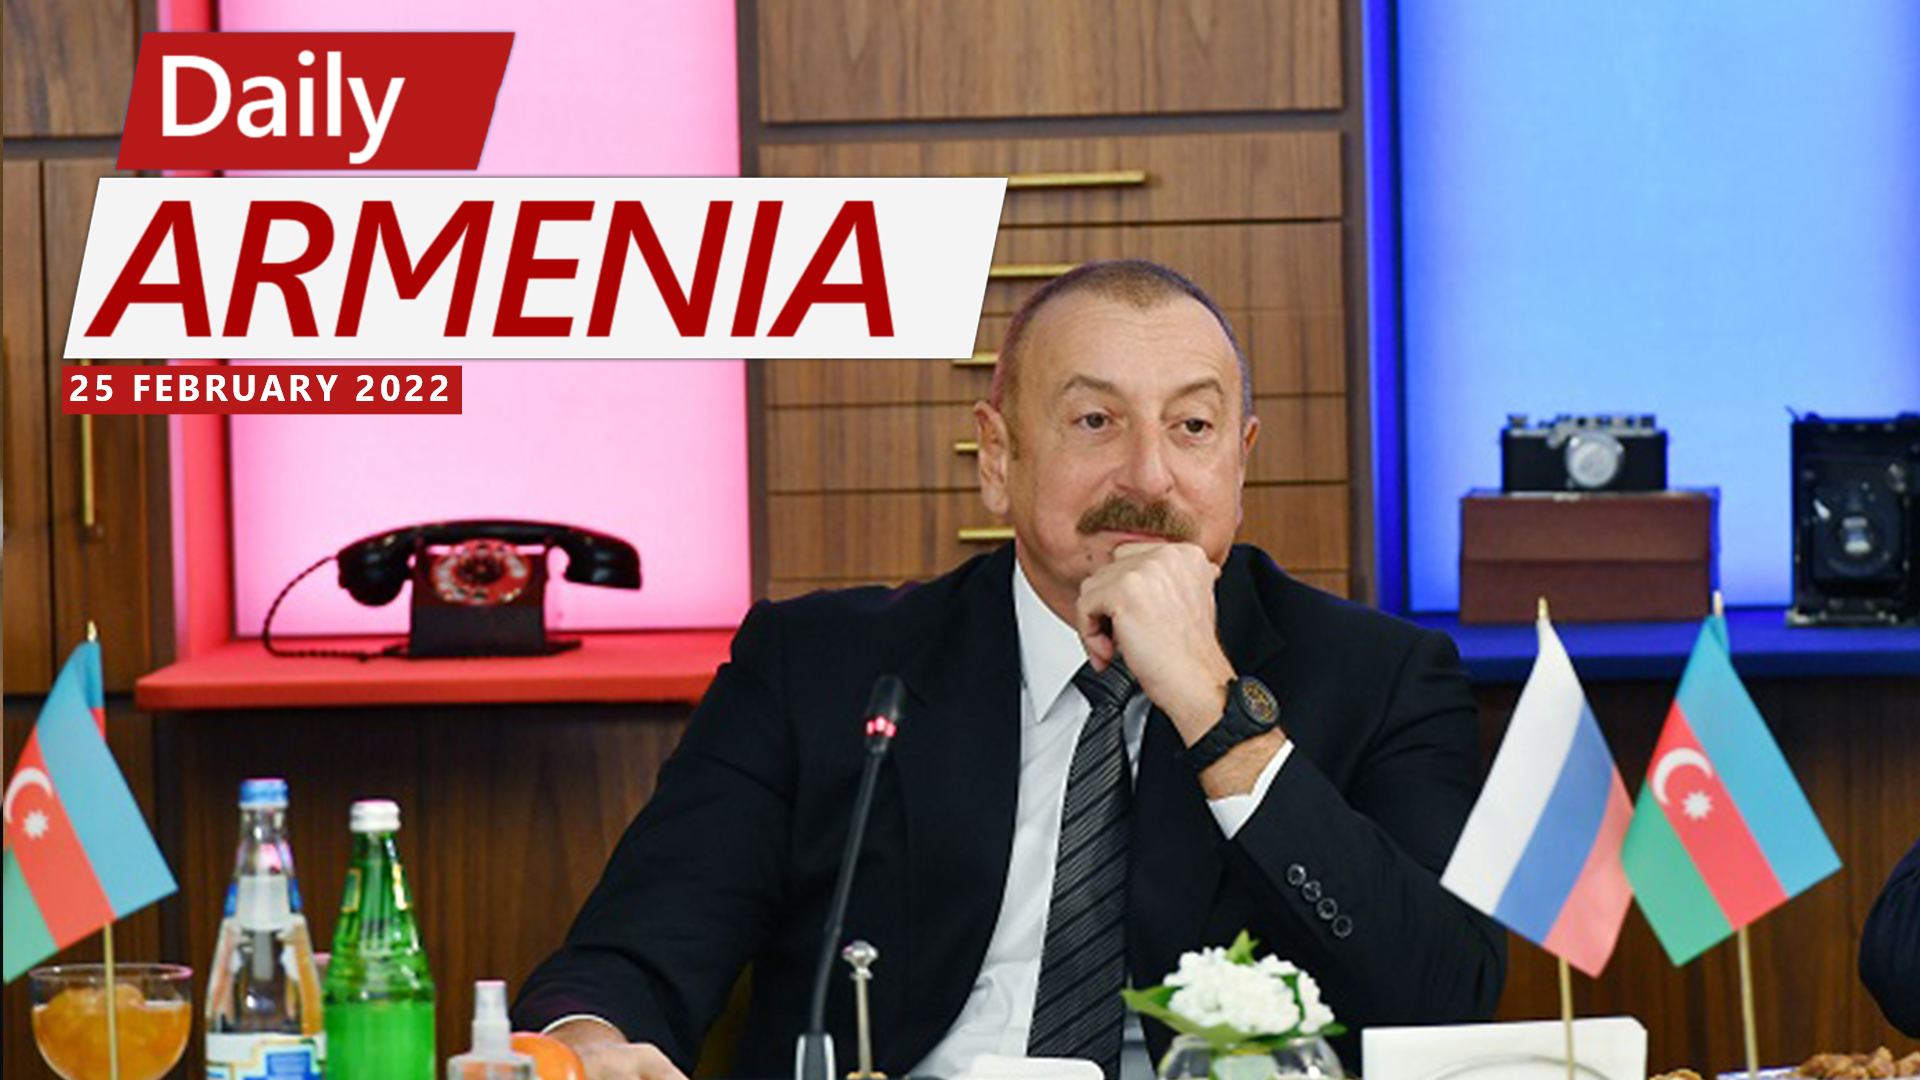 Peace treaty between Armenia and Azerbaijan will be signed eventually, says Aliyev